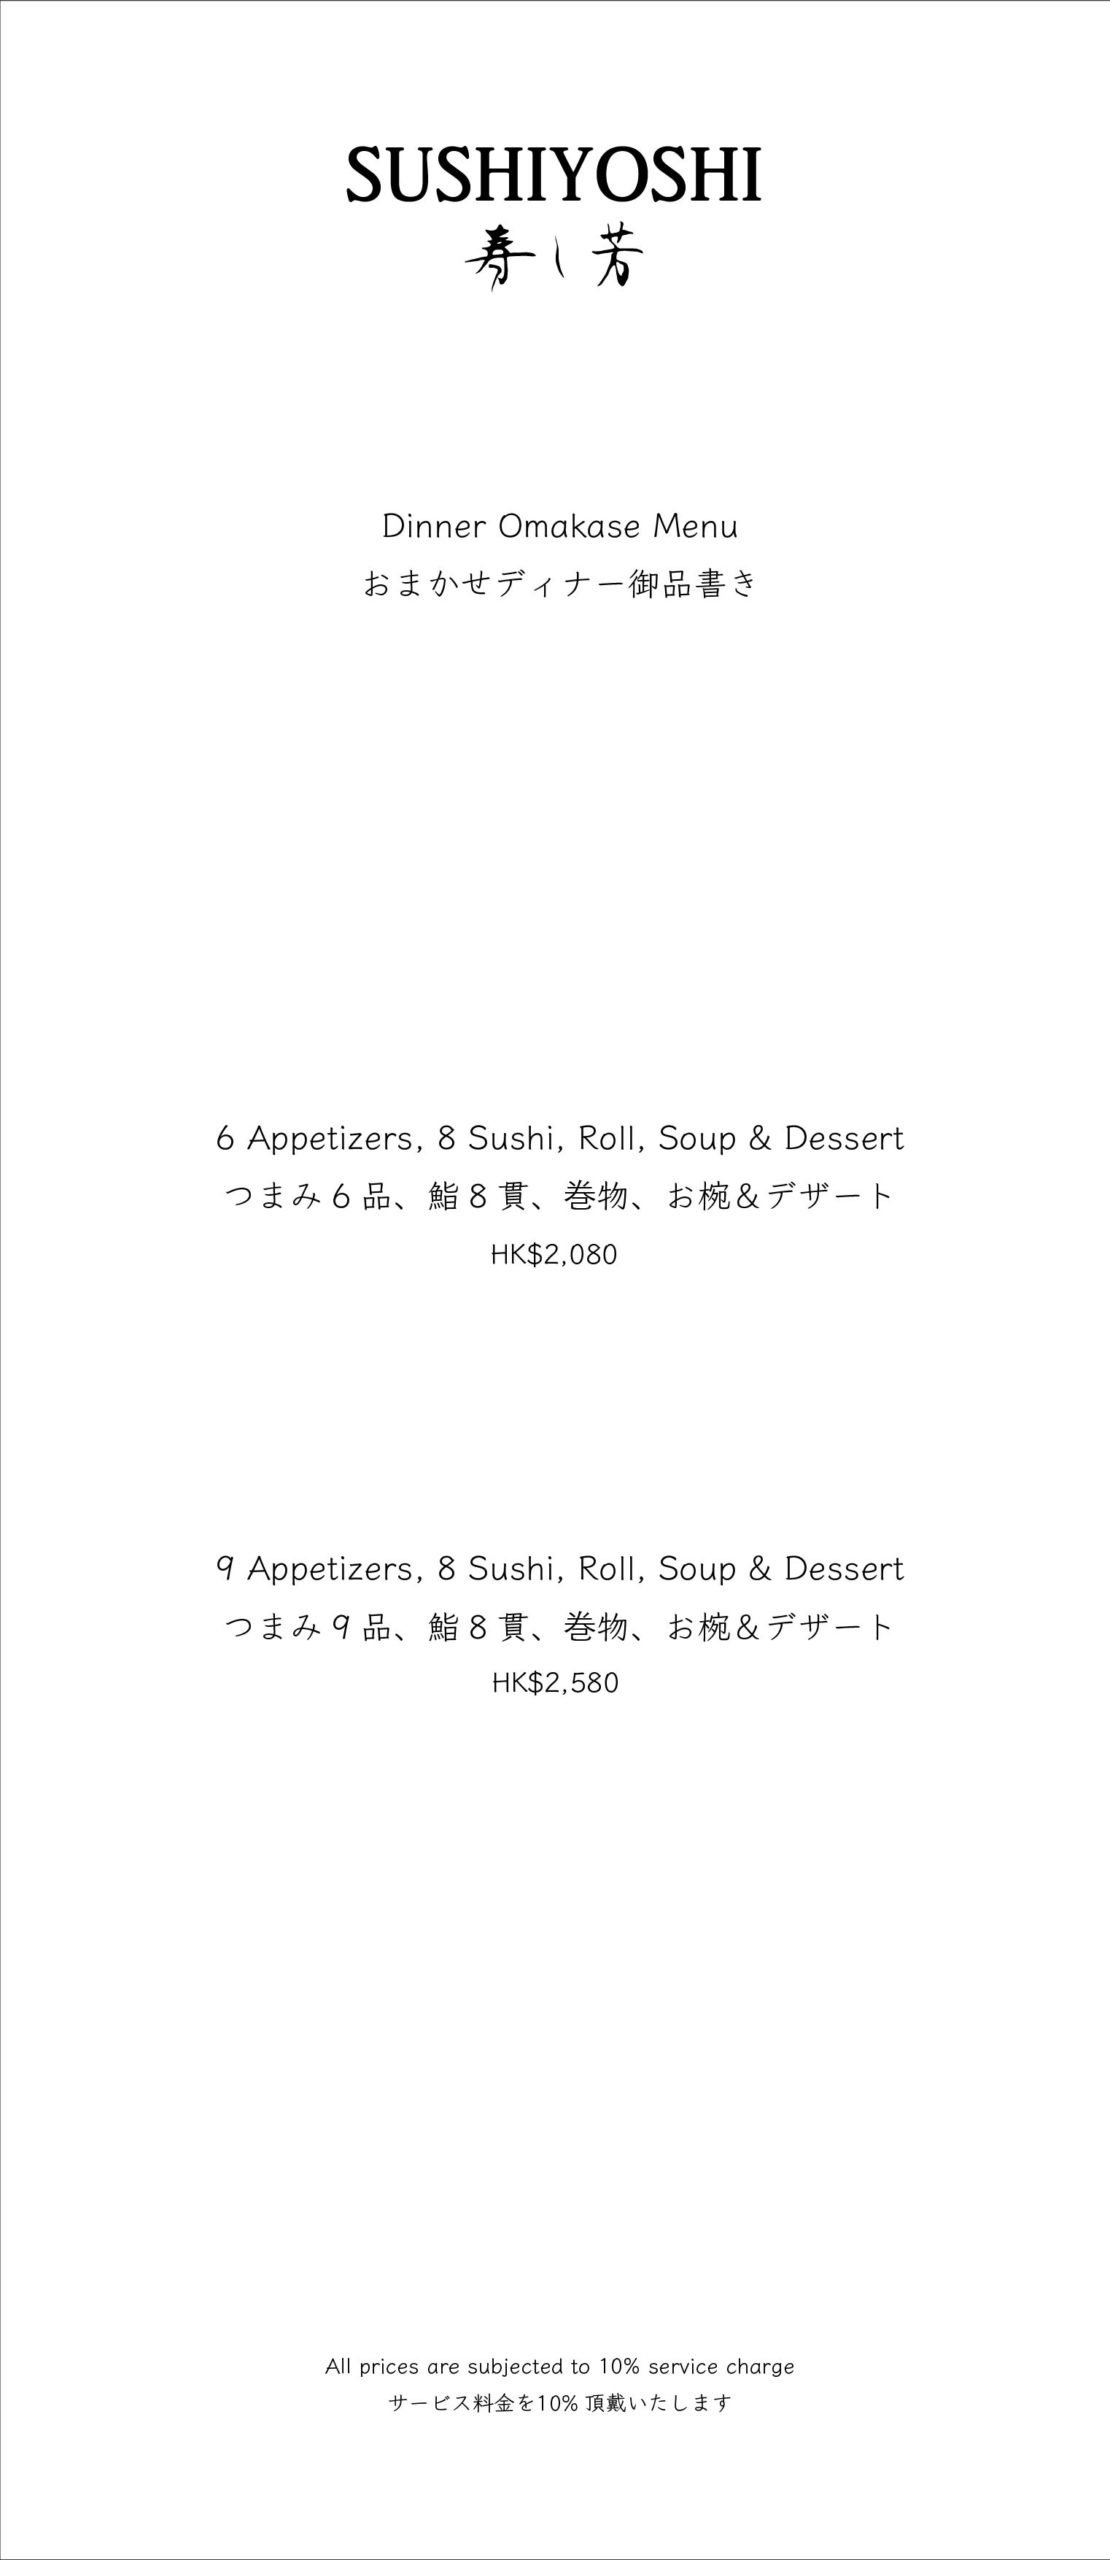 Sushiyoshi menu